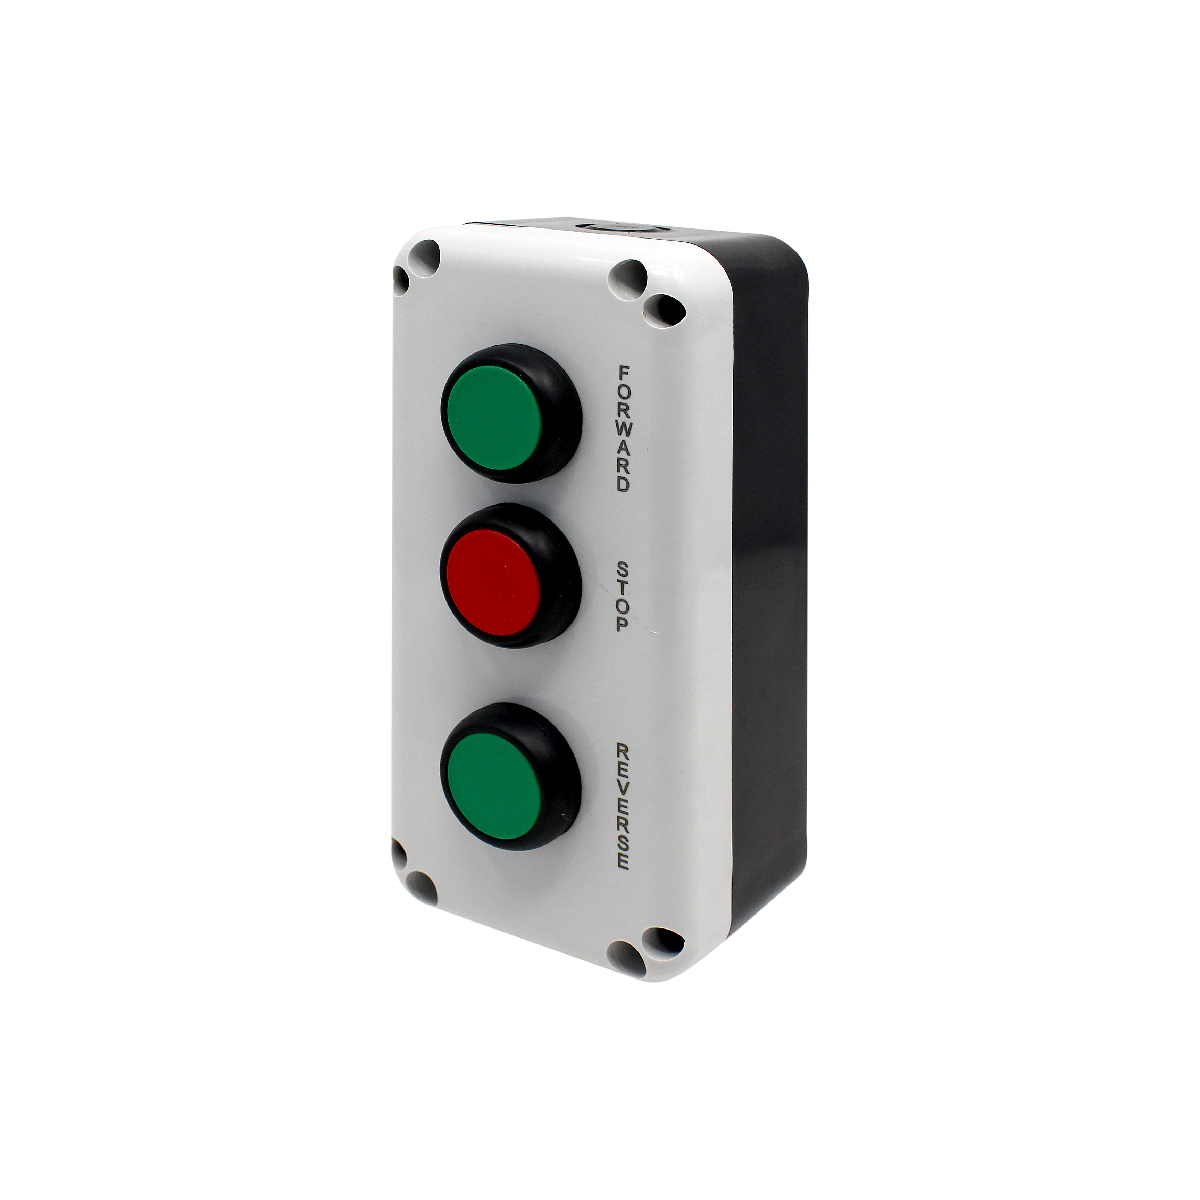 PBSL3FSR кнопочный пост, кнопка forward, 1NO - зеленая, кнопка stop, 1NC - красная, кнопка reverse, 1NO зеленая